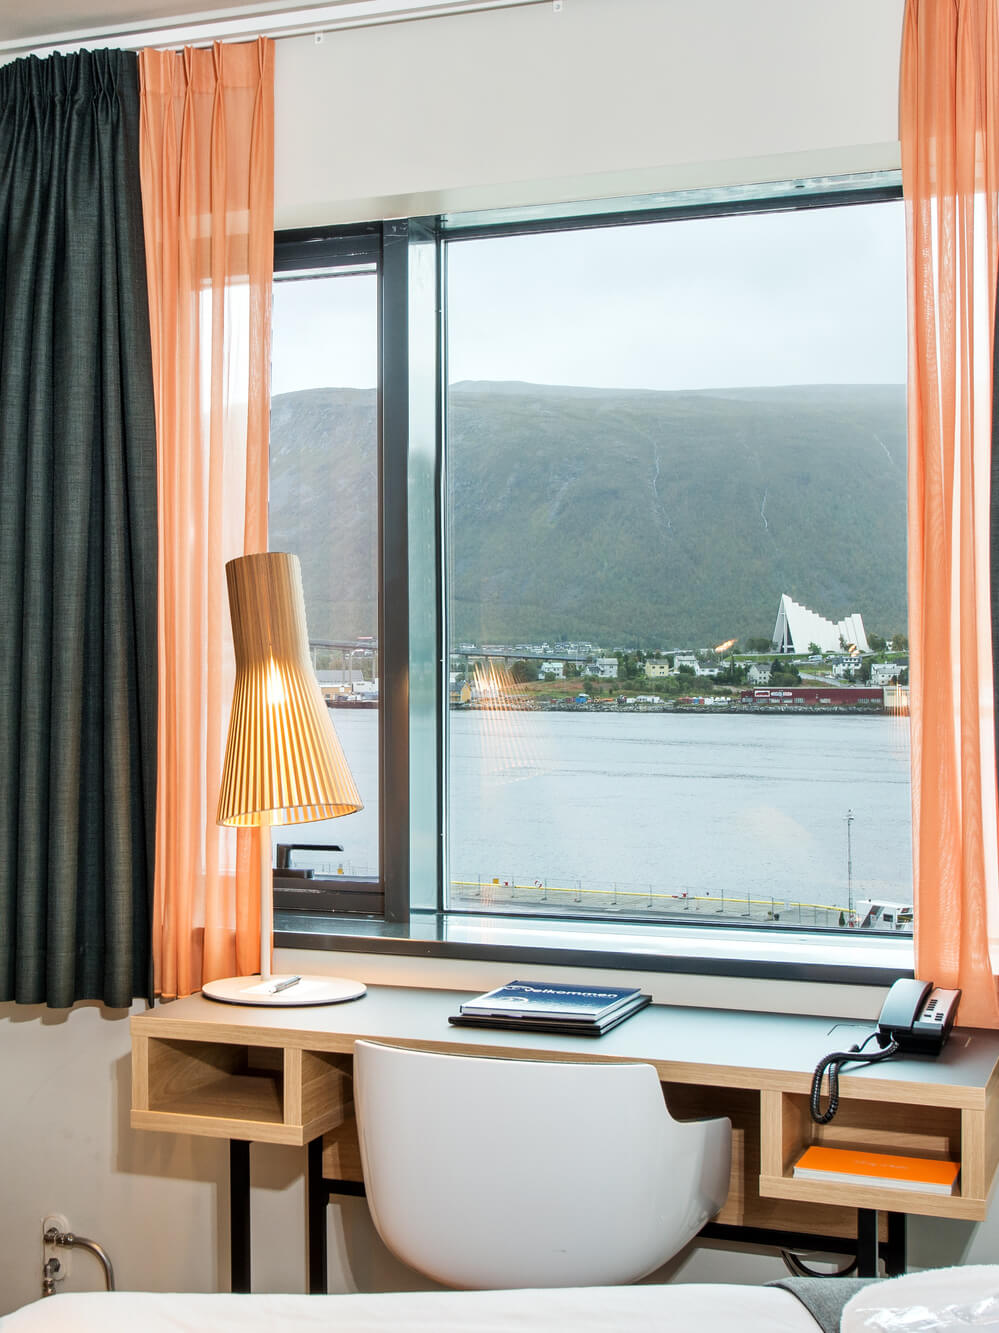 Utsikt från hotellrummet på Clarion Hotel The Edge i Tromsö.